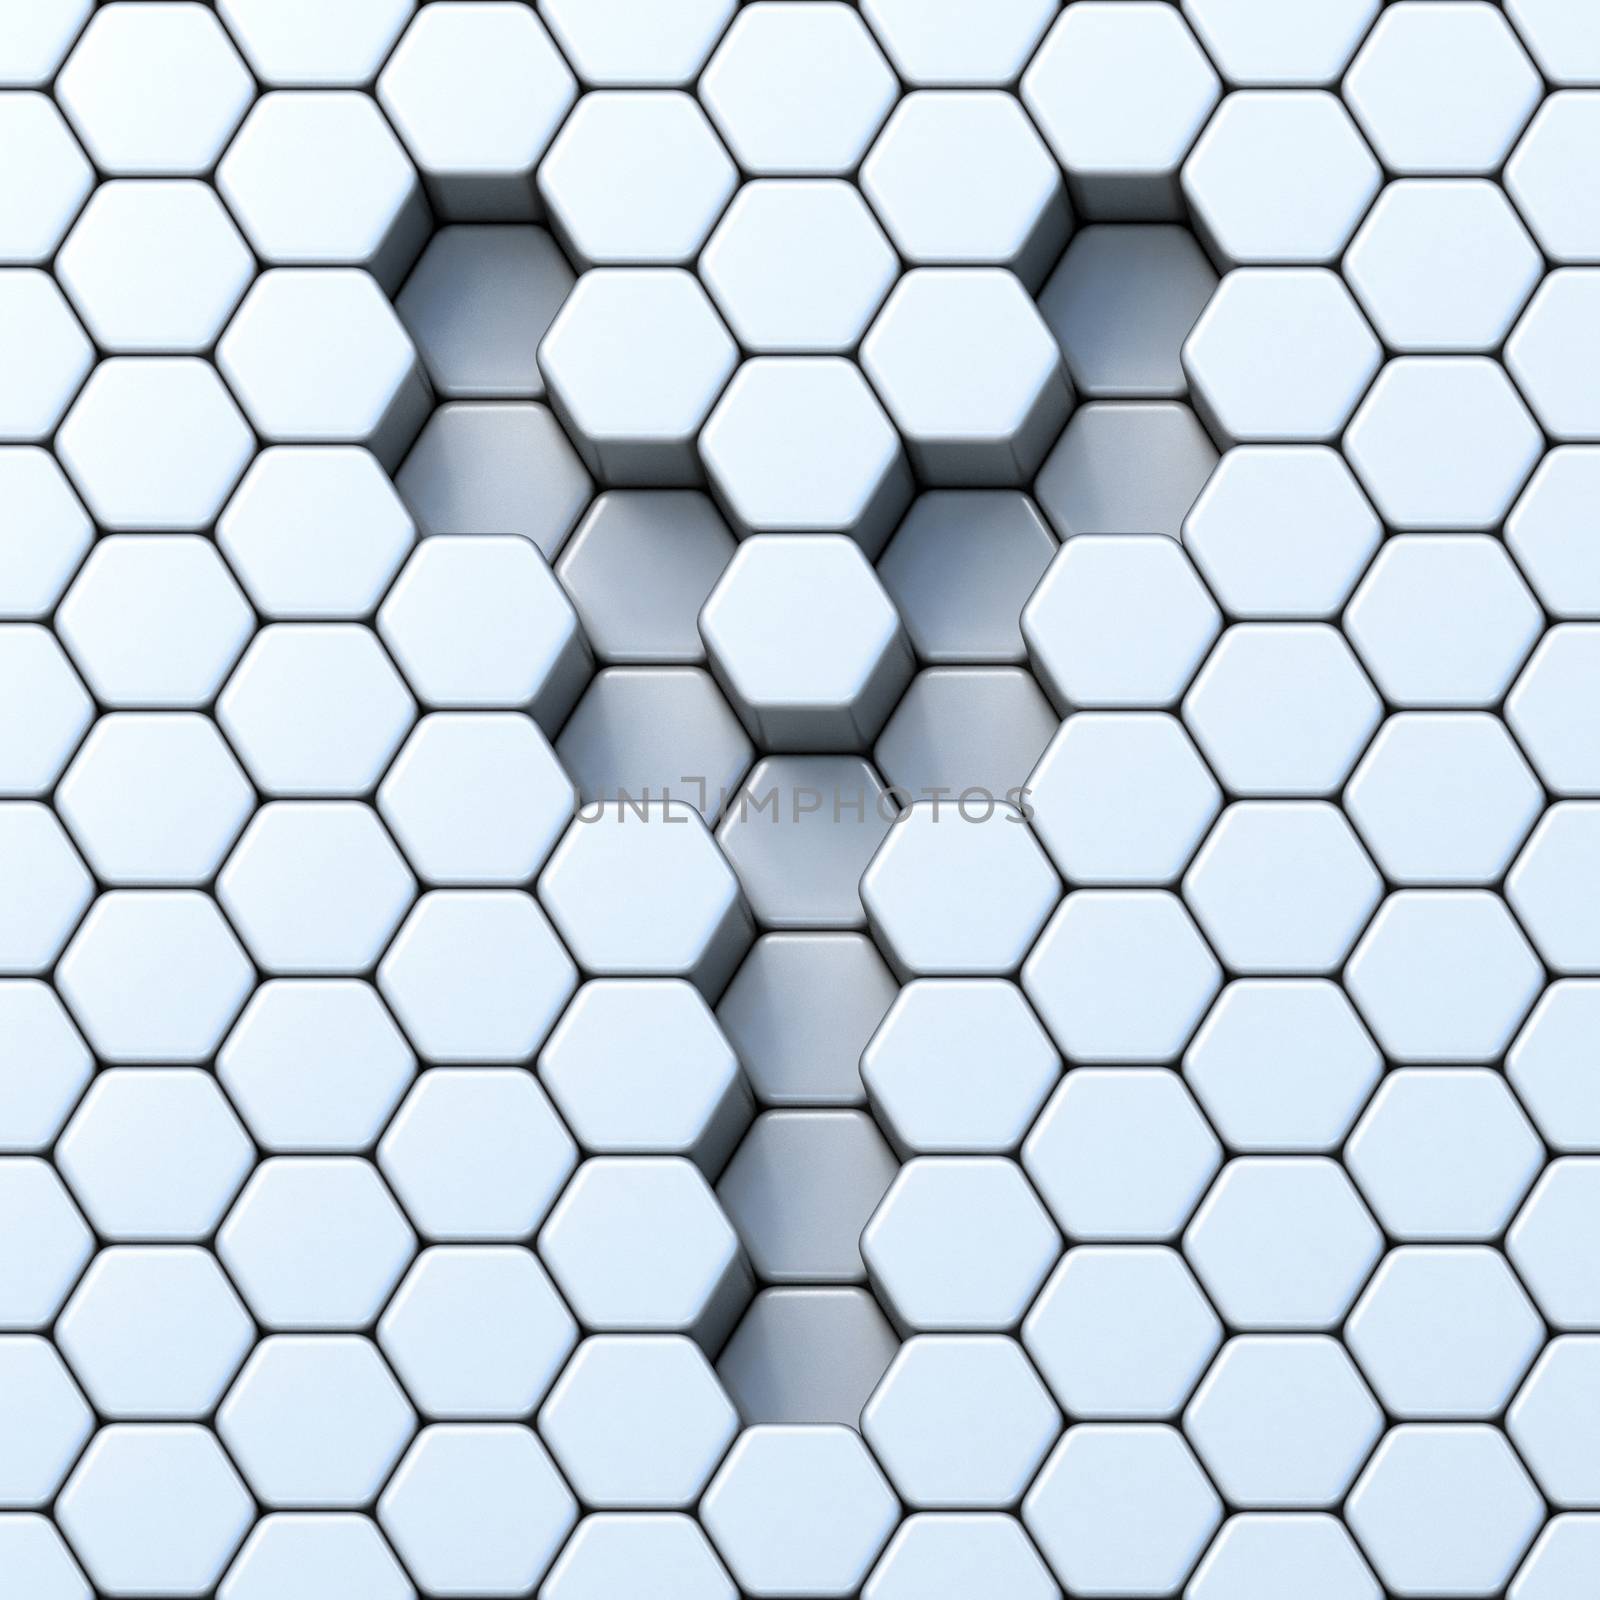 Hexagonal grid letter Y 3D by djmilic